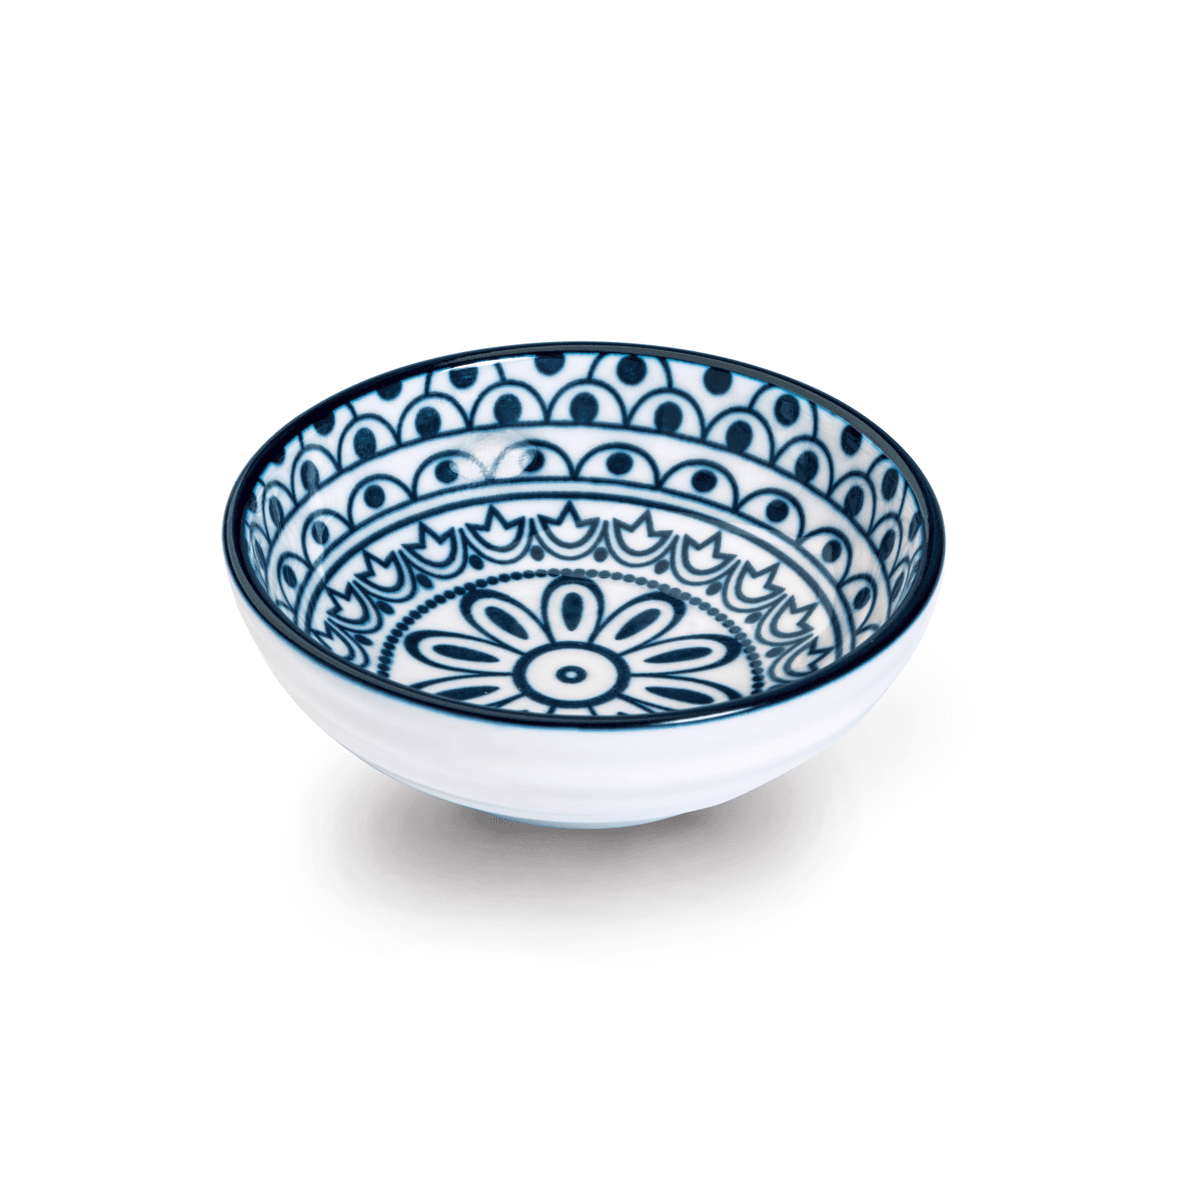 Che Brucia Arabesque Blue Porcelain Round Dish 9 cm /3.5" Blue Ivory Porcelain